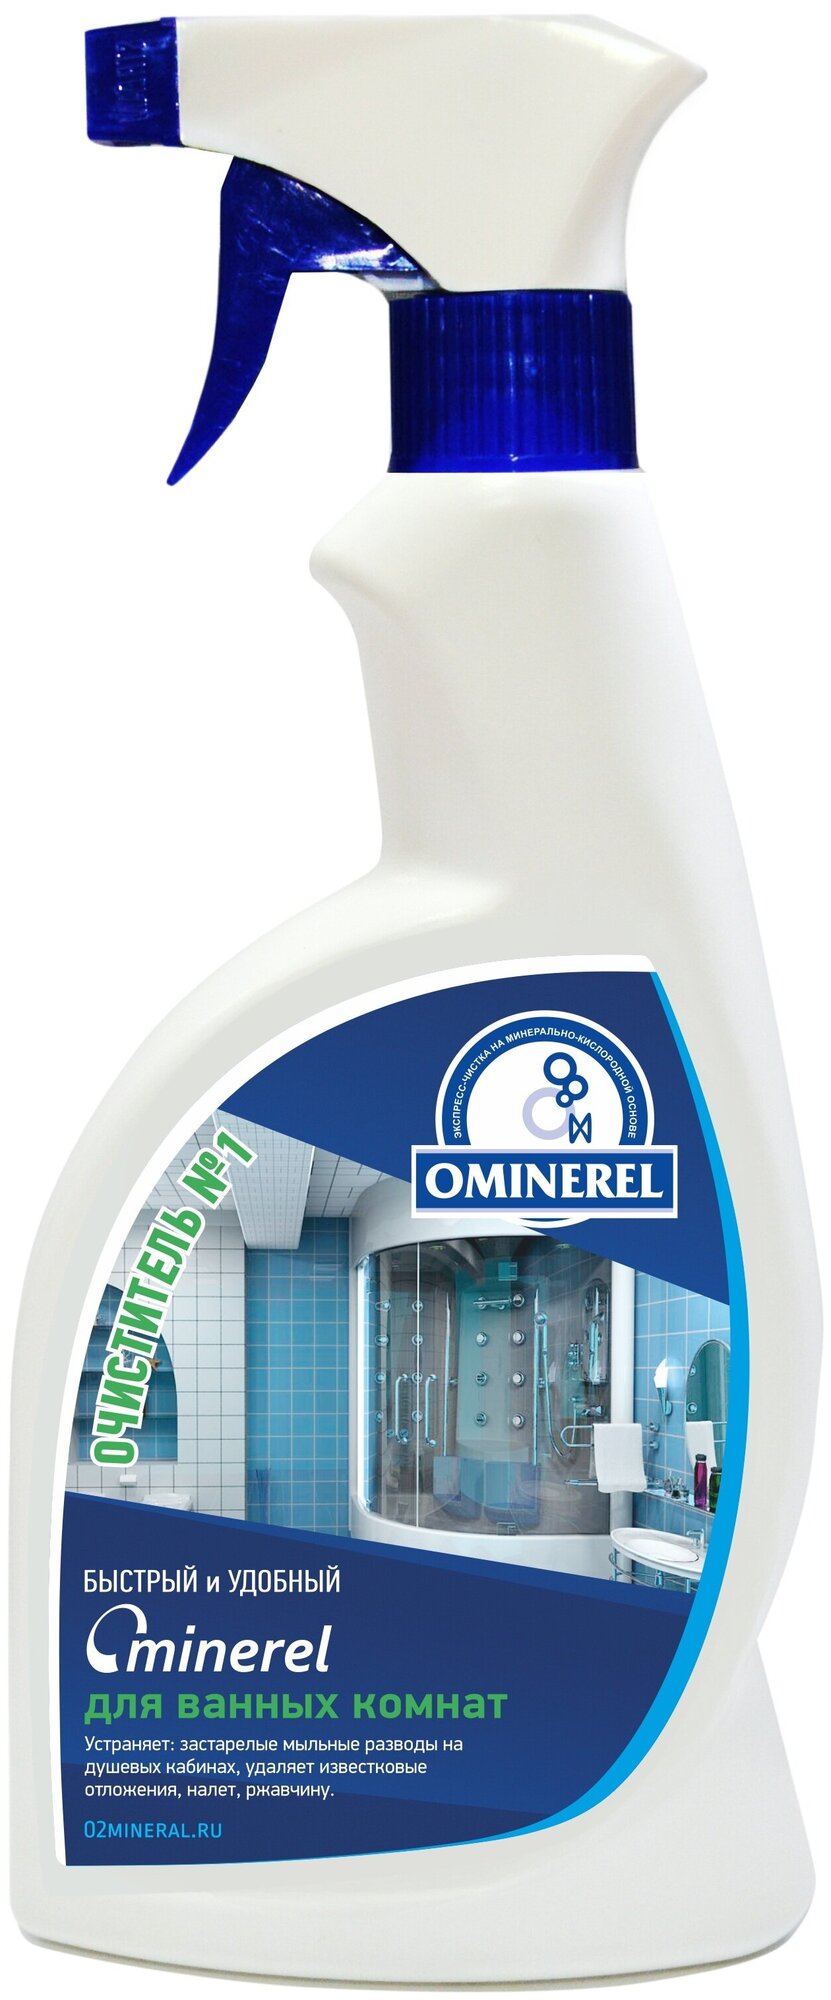 Очиститель OMINEREL для ванных комнат И душевых кабин